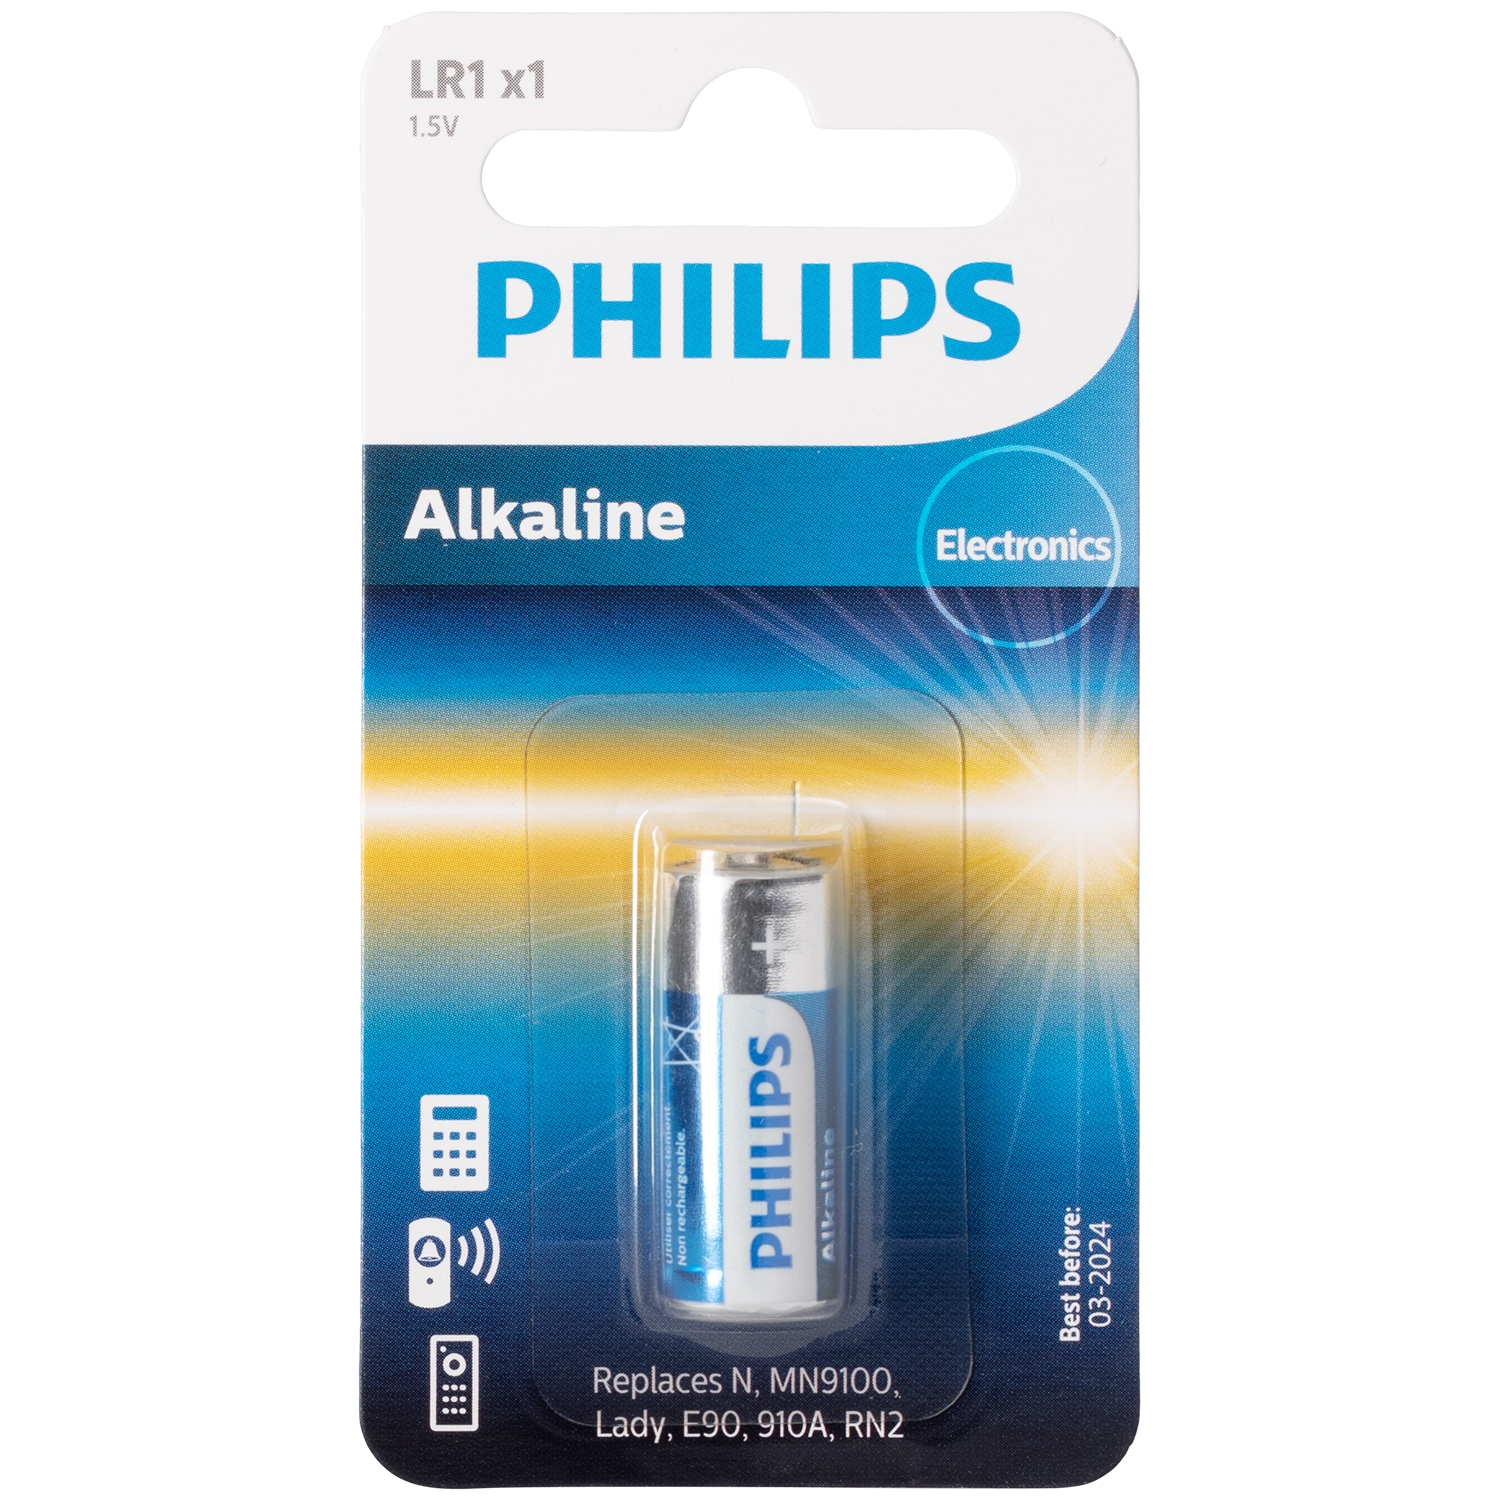 Philips Philips Alkaline LR1 1.5V Batteri